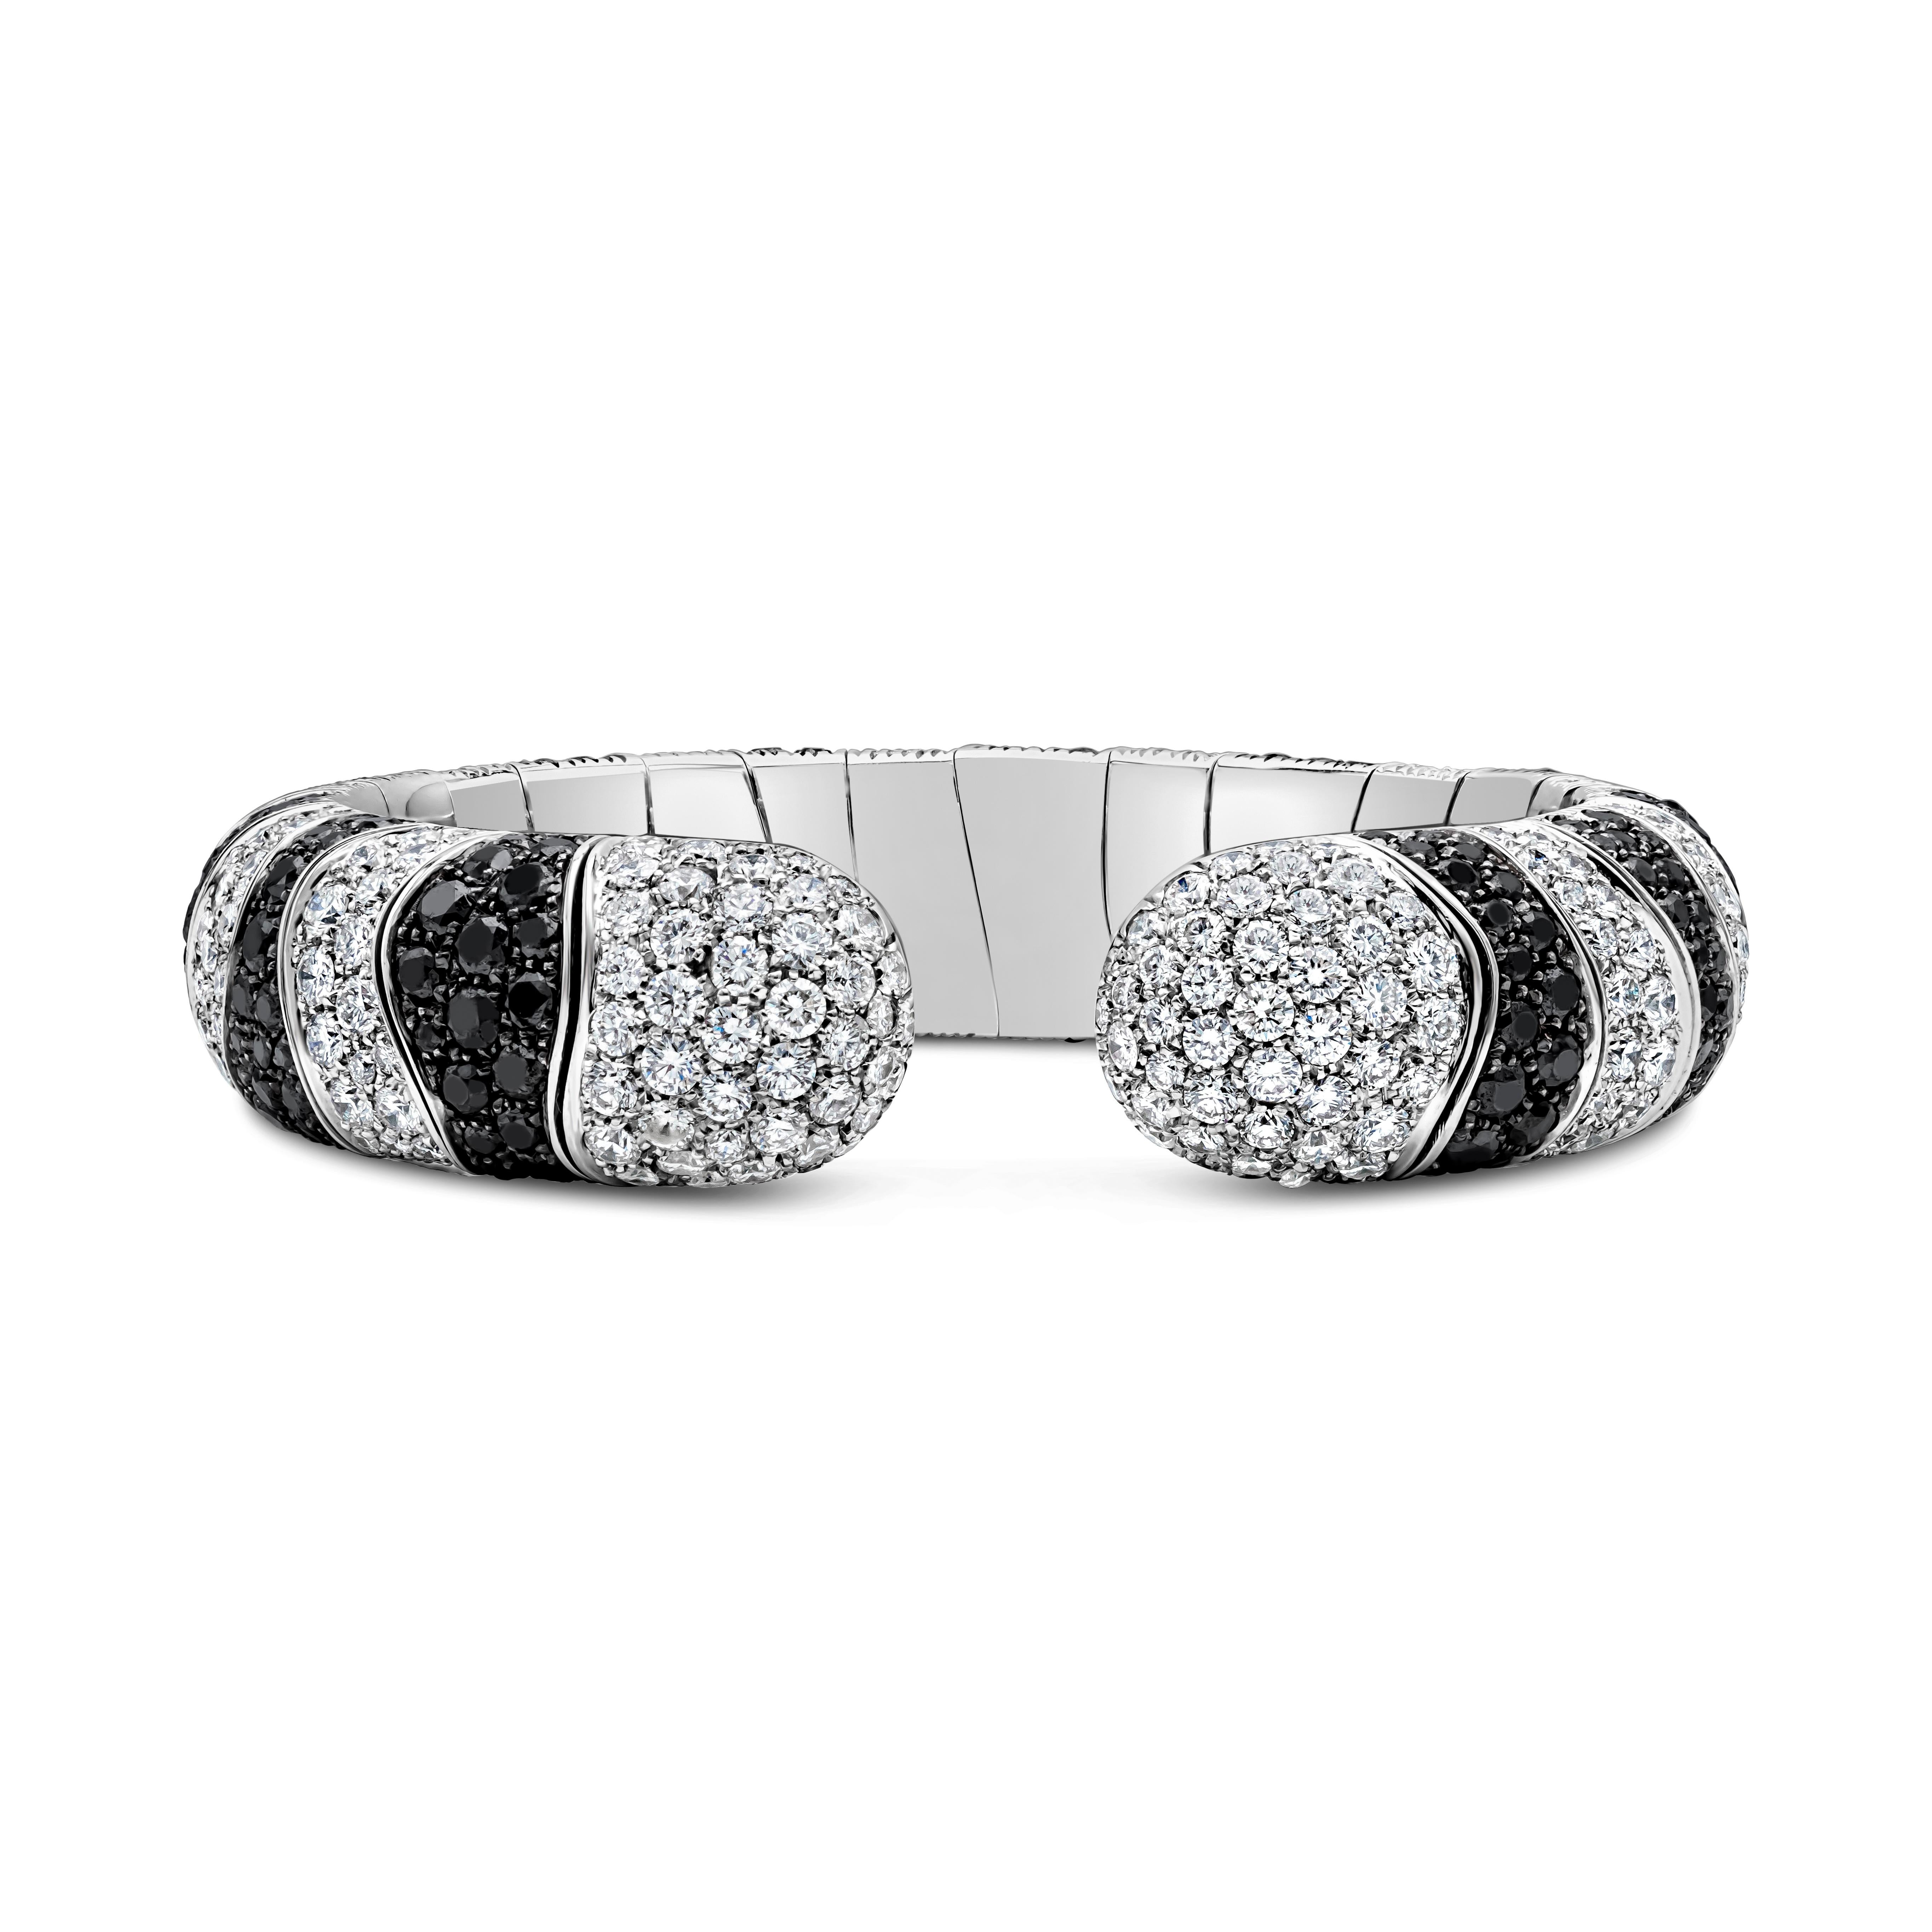 Ce bracelet manchette semi-flexible met en valeur des diamants noirs et blancs sertis dans de l'or blanc 18 carats. Les diamants noirs pèsent 13.50 carats au total. Les diamants blancs pèsent 11,00 carats au total, de couleur F et de pureté VS.